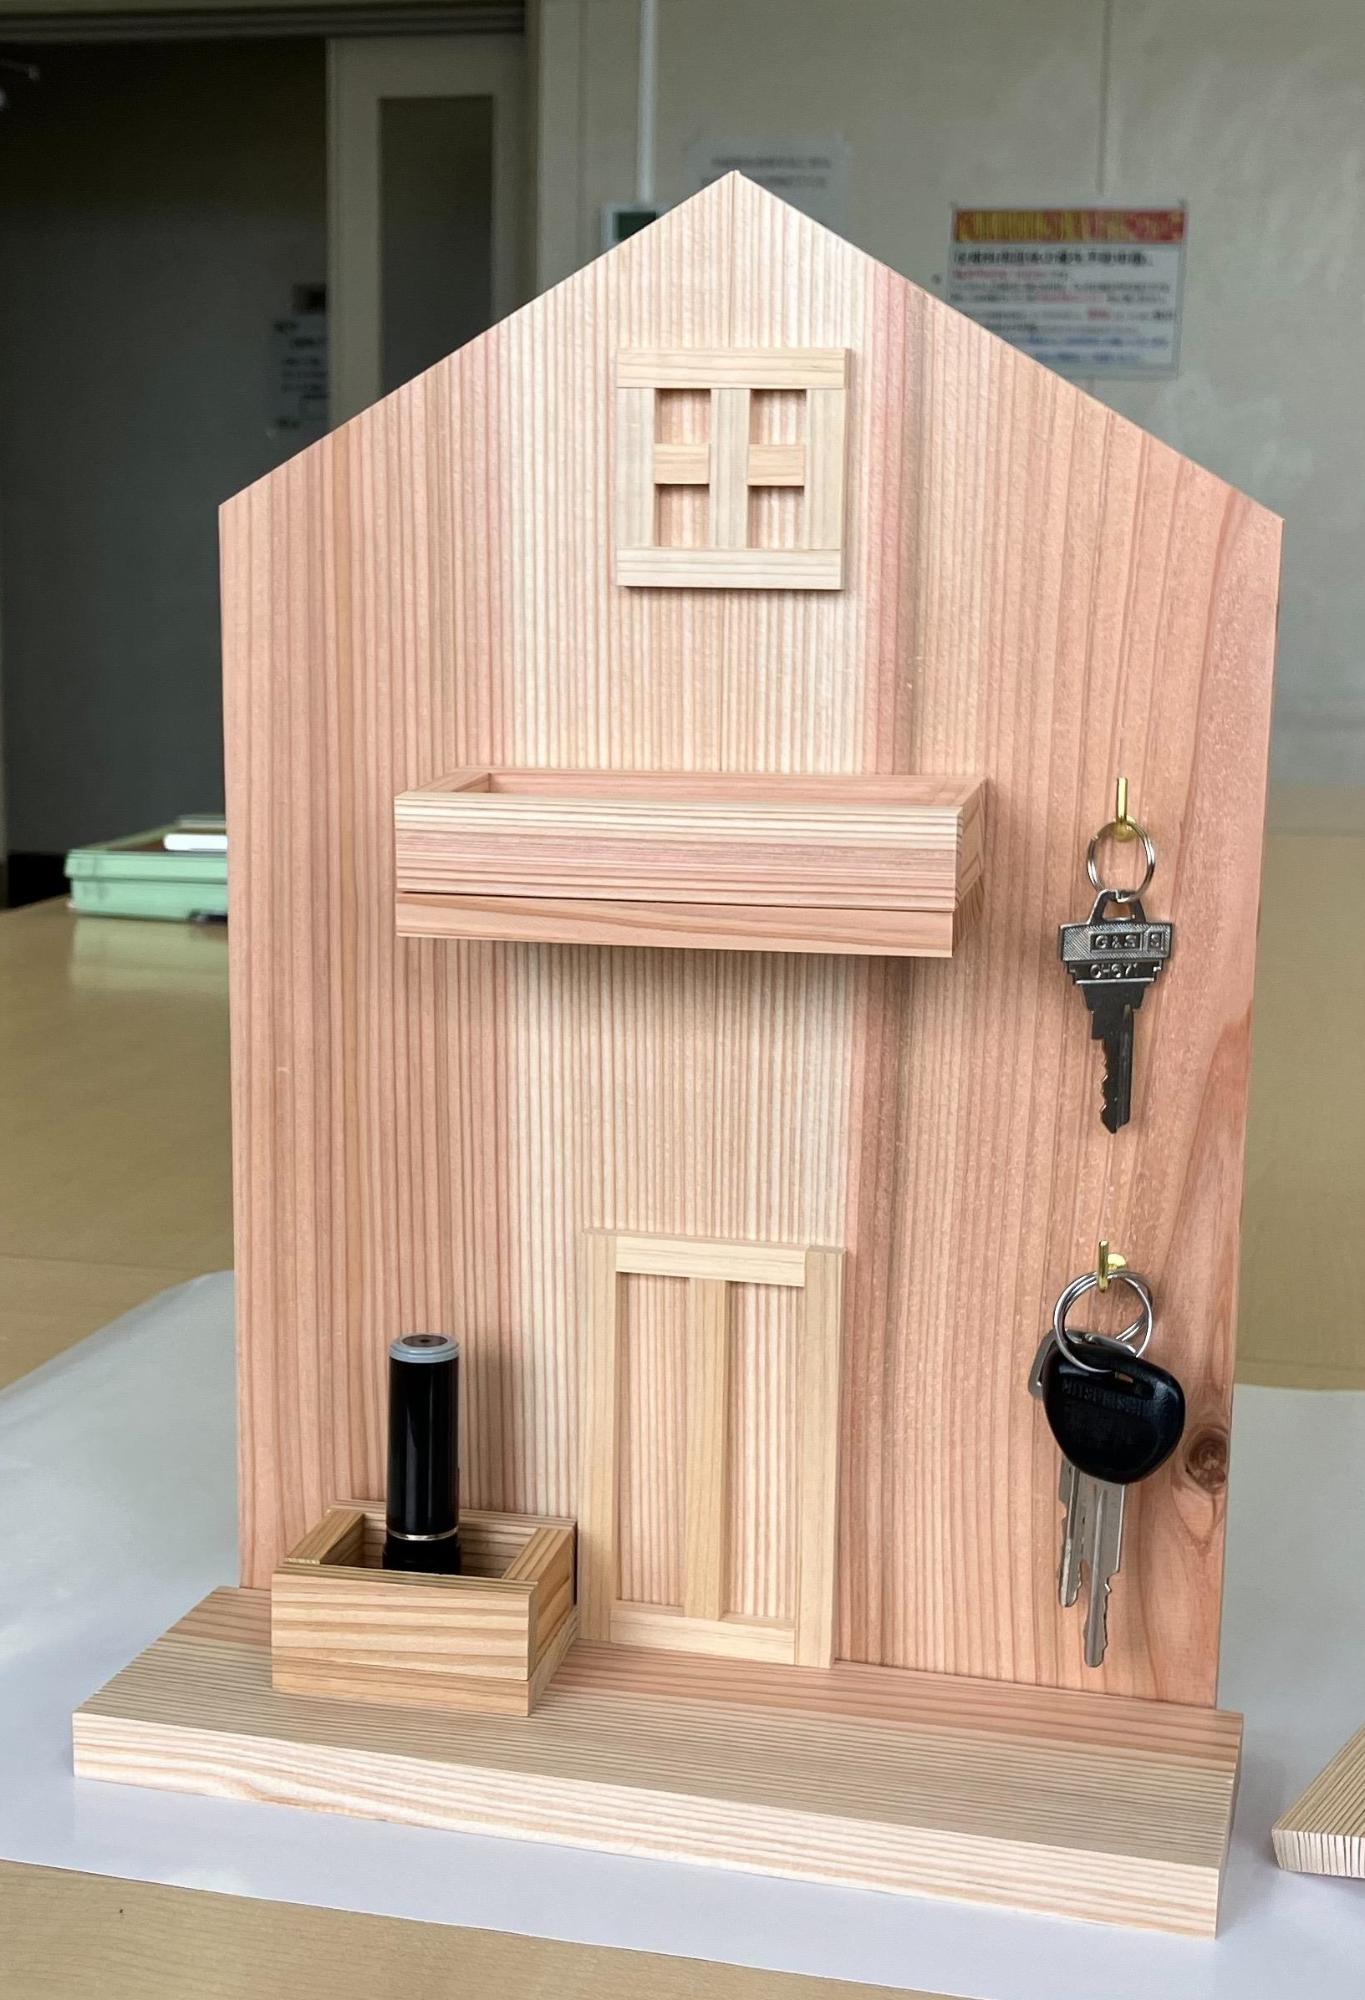 木工作広場で作ったキーラック。西川材の板を家の形に切ってあり、そこに薄く小さい木片で窓やドアを貼り付けてあったり、箱のような入れ物もついている。また、鍵をひっかけるL字フックもついている。